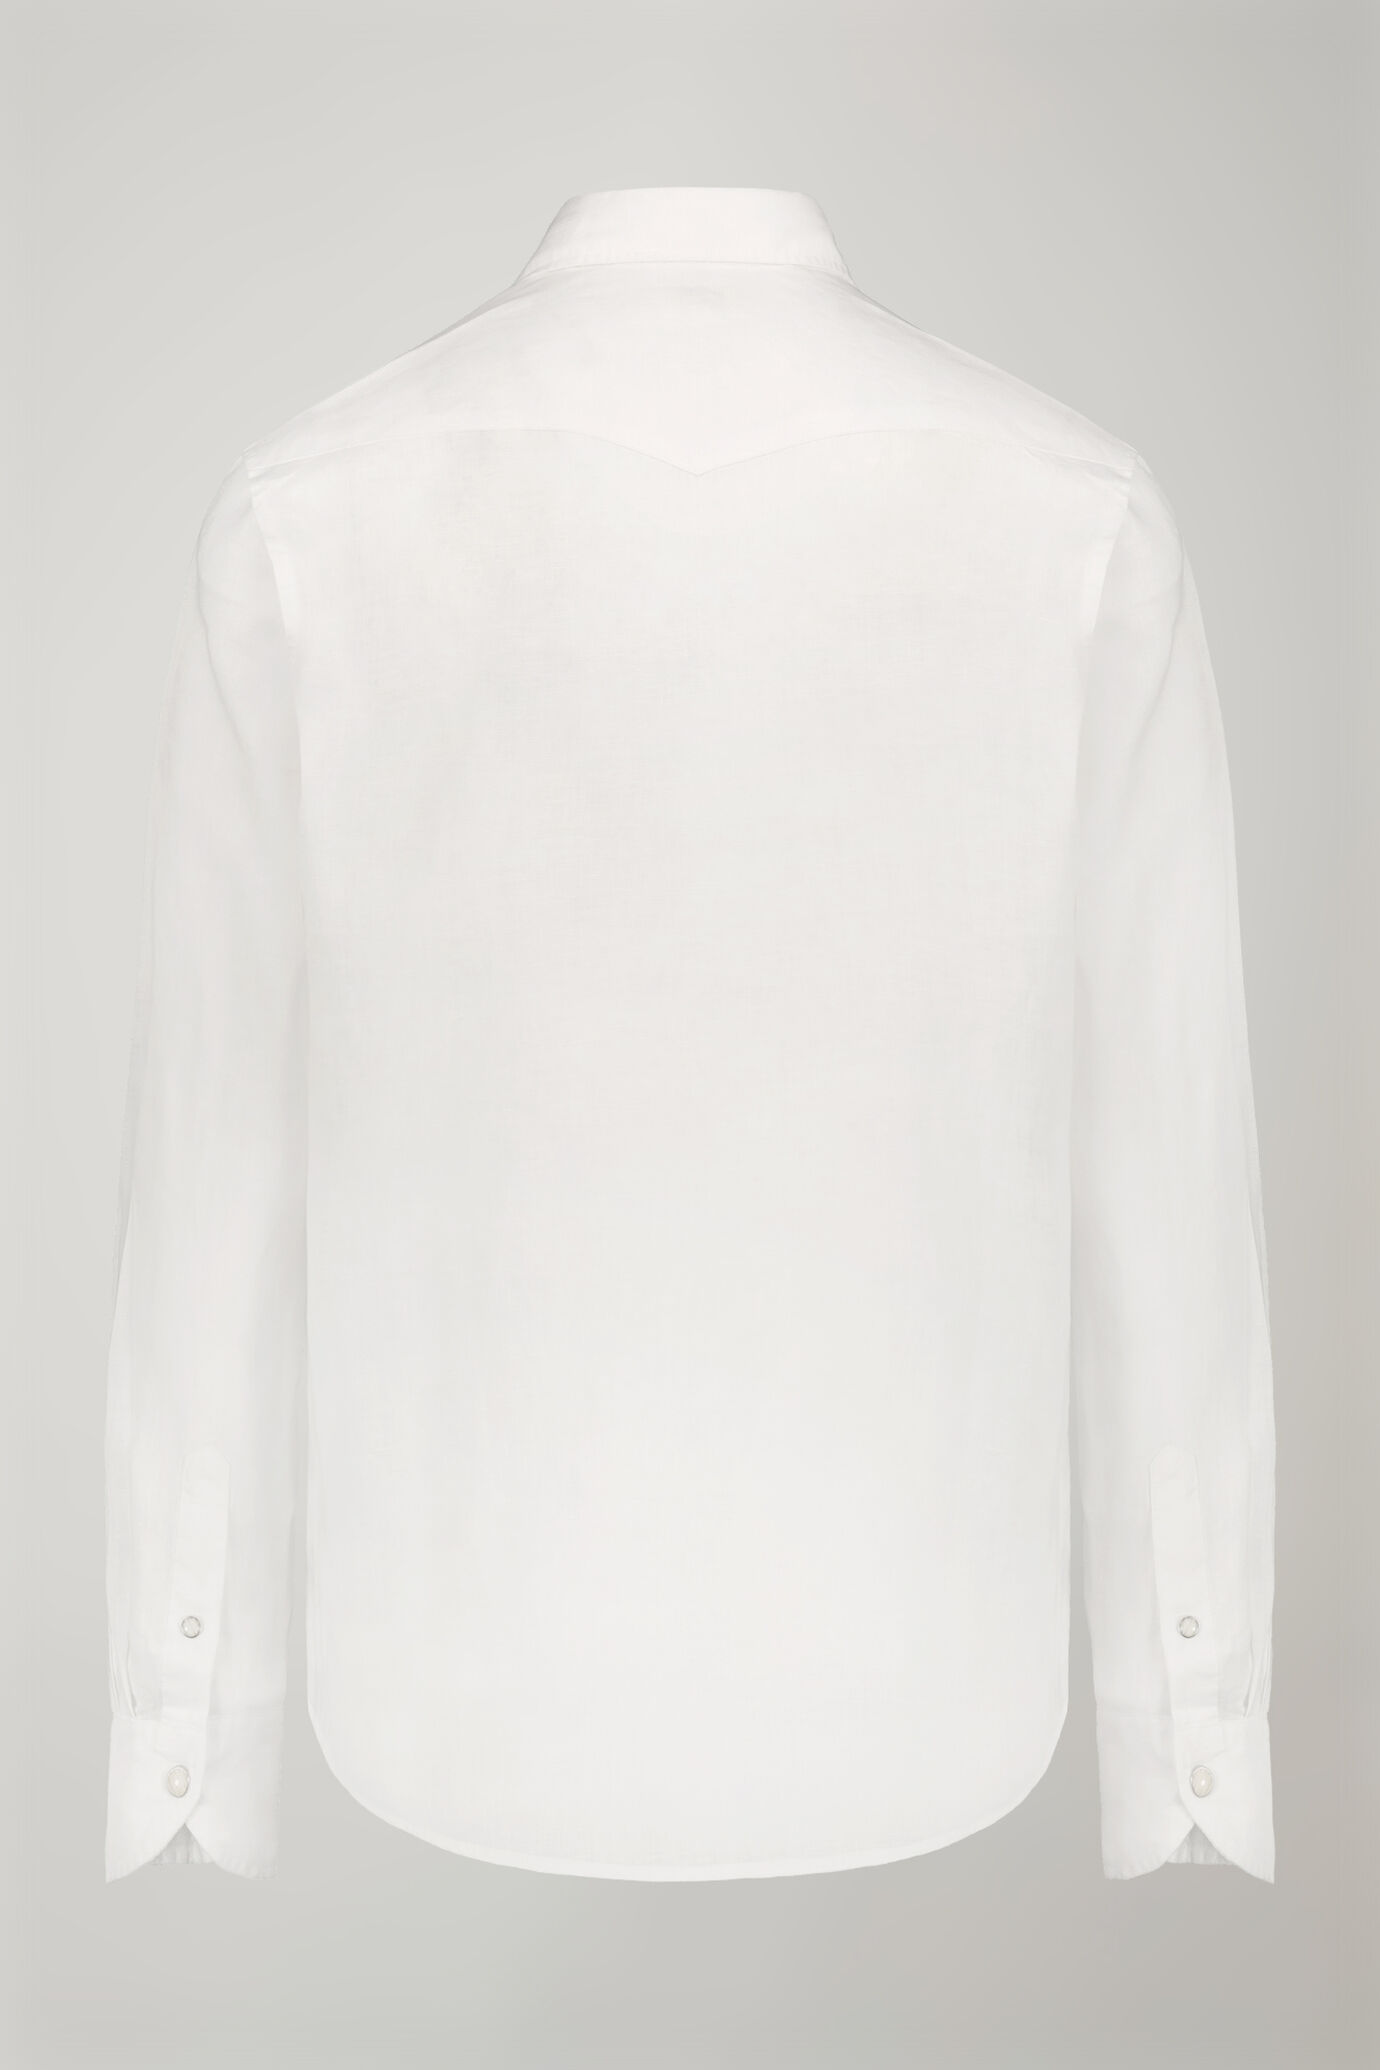 Camicia casual uomo collo classico 100% lino comfort fit image number 5